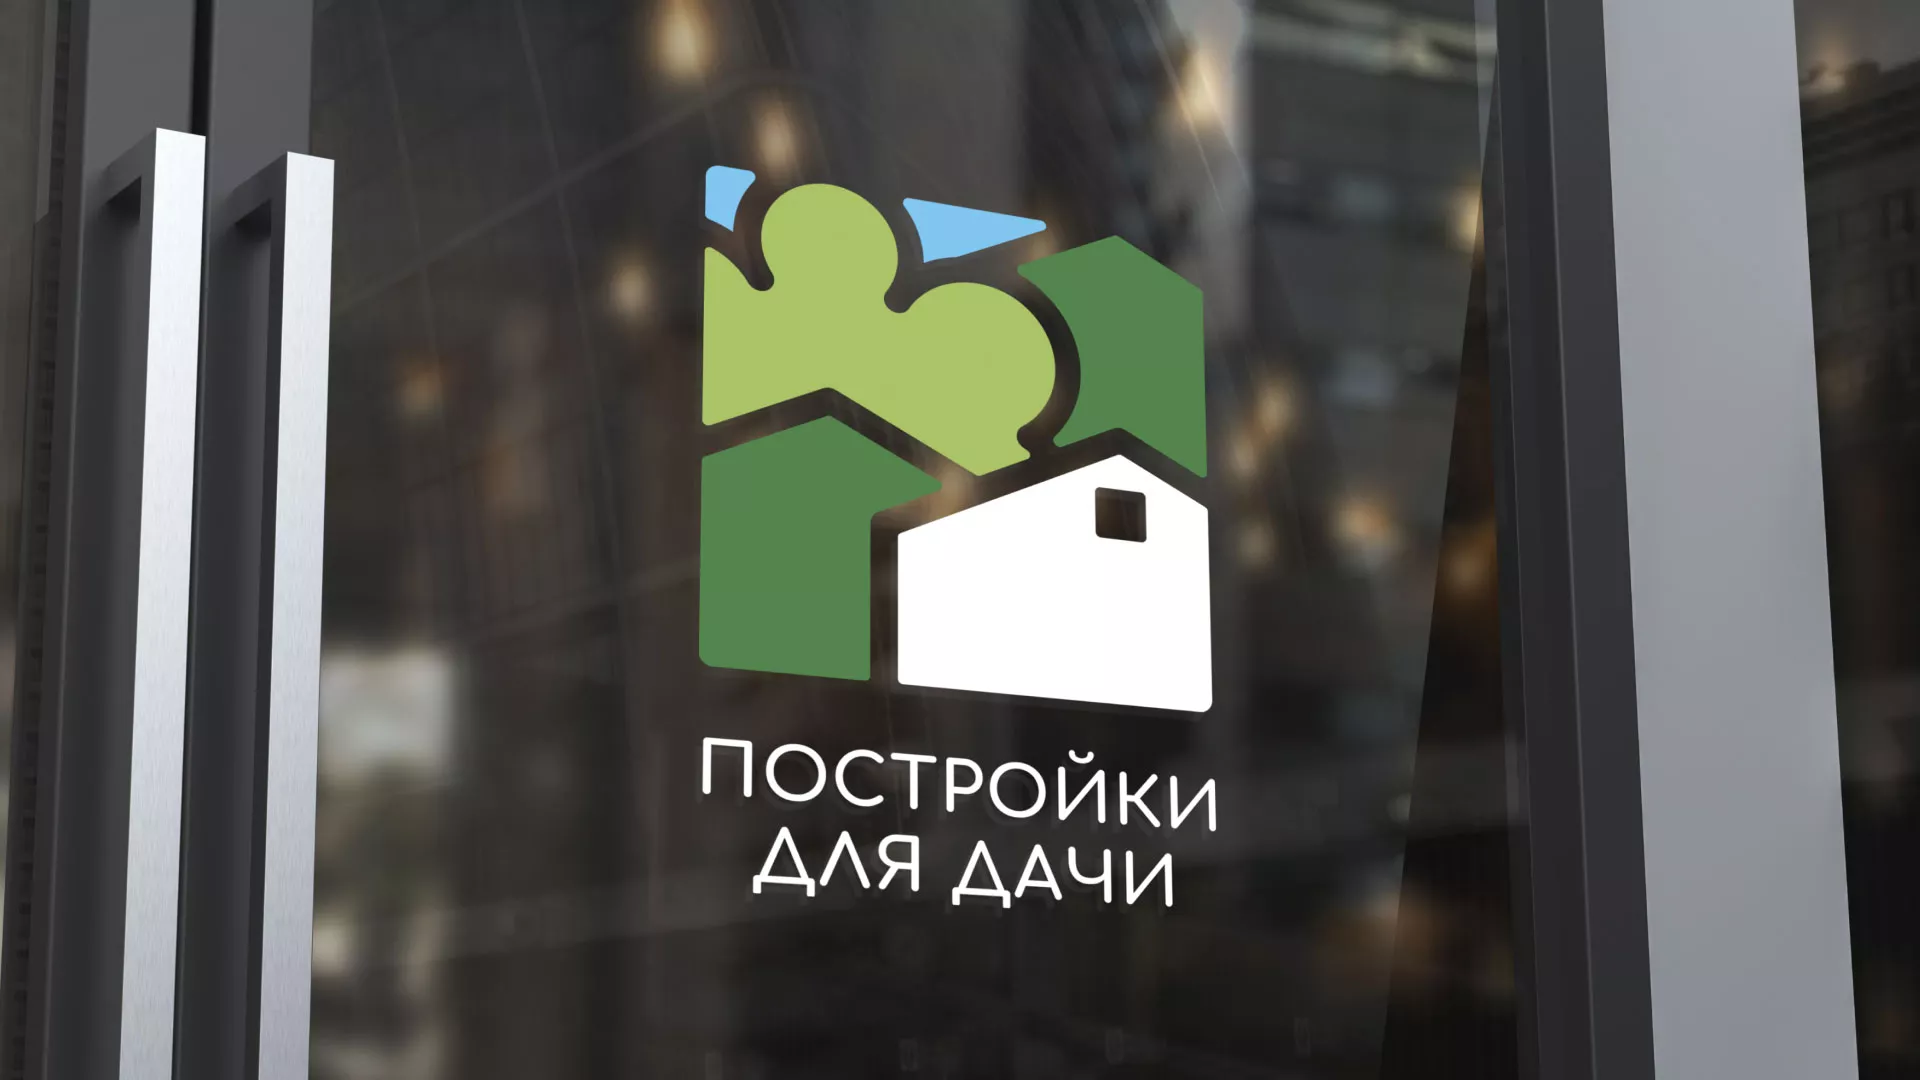 Разработка логотипа в Жуковском для компании «Постройки для дачи»